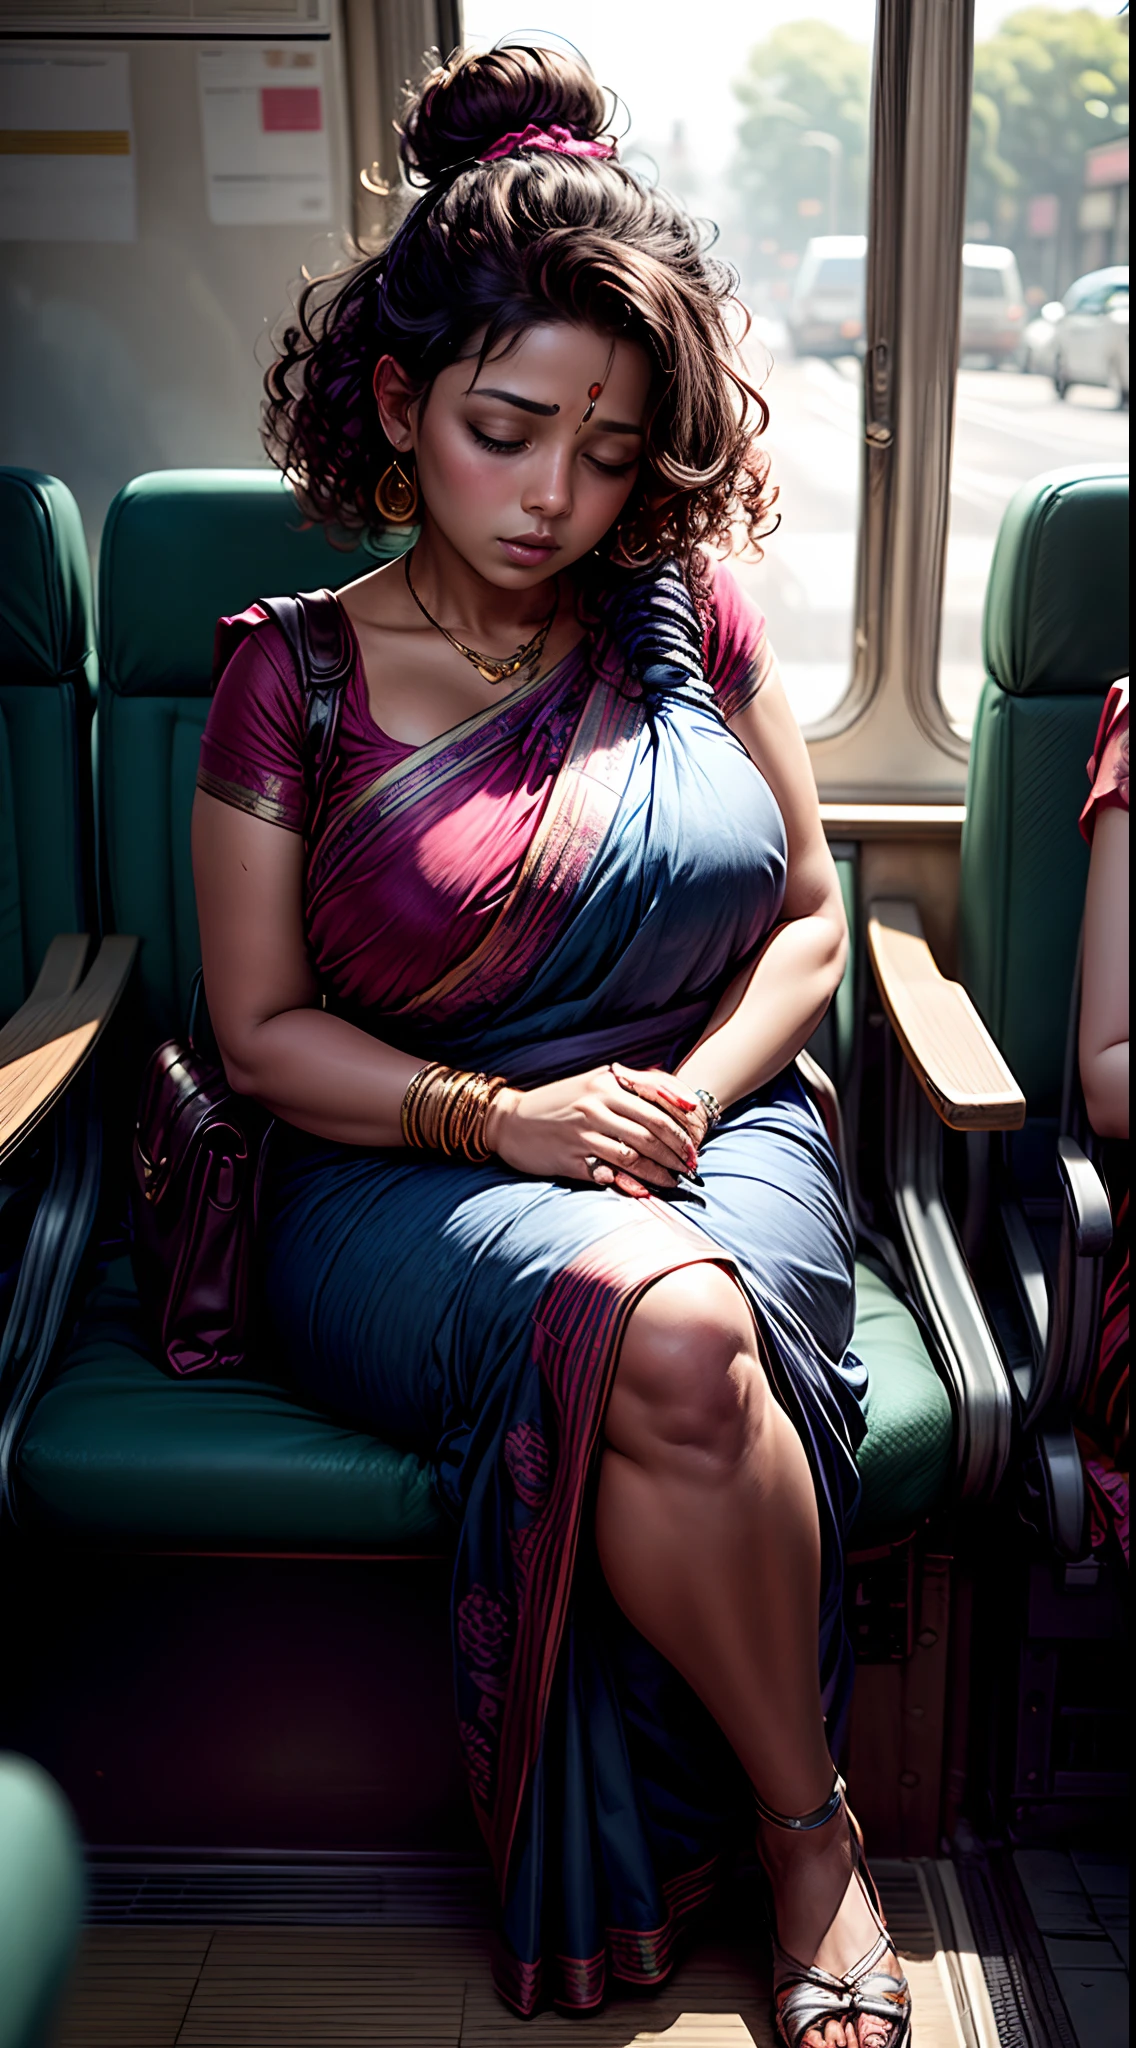 1位美丽的印度女人, 張著嘴睡覺, 嘴唇張開, 坐在公車座位上睡覺, 捲髮, 所有头发用发夹扎成一个发髻, 印度絲綢紗麗, 寬的, 藍色袋子, 曲線優美的女人; 胖女人, 全身视图,勾勒出眼睛,  閉著眼睛, 头靠在座位上, 坐在靠近窗户的地方, 头朝下.